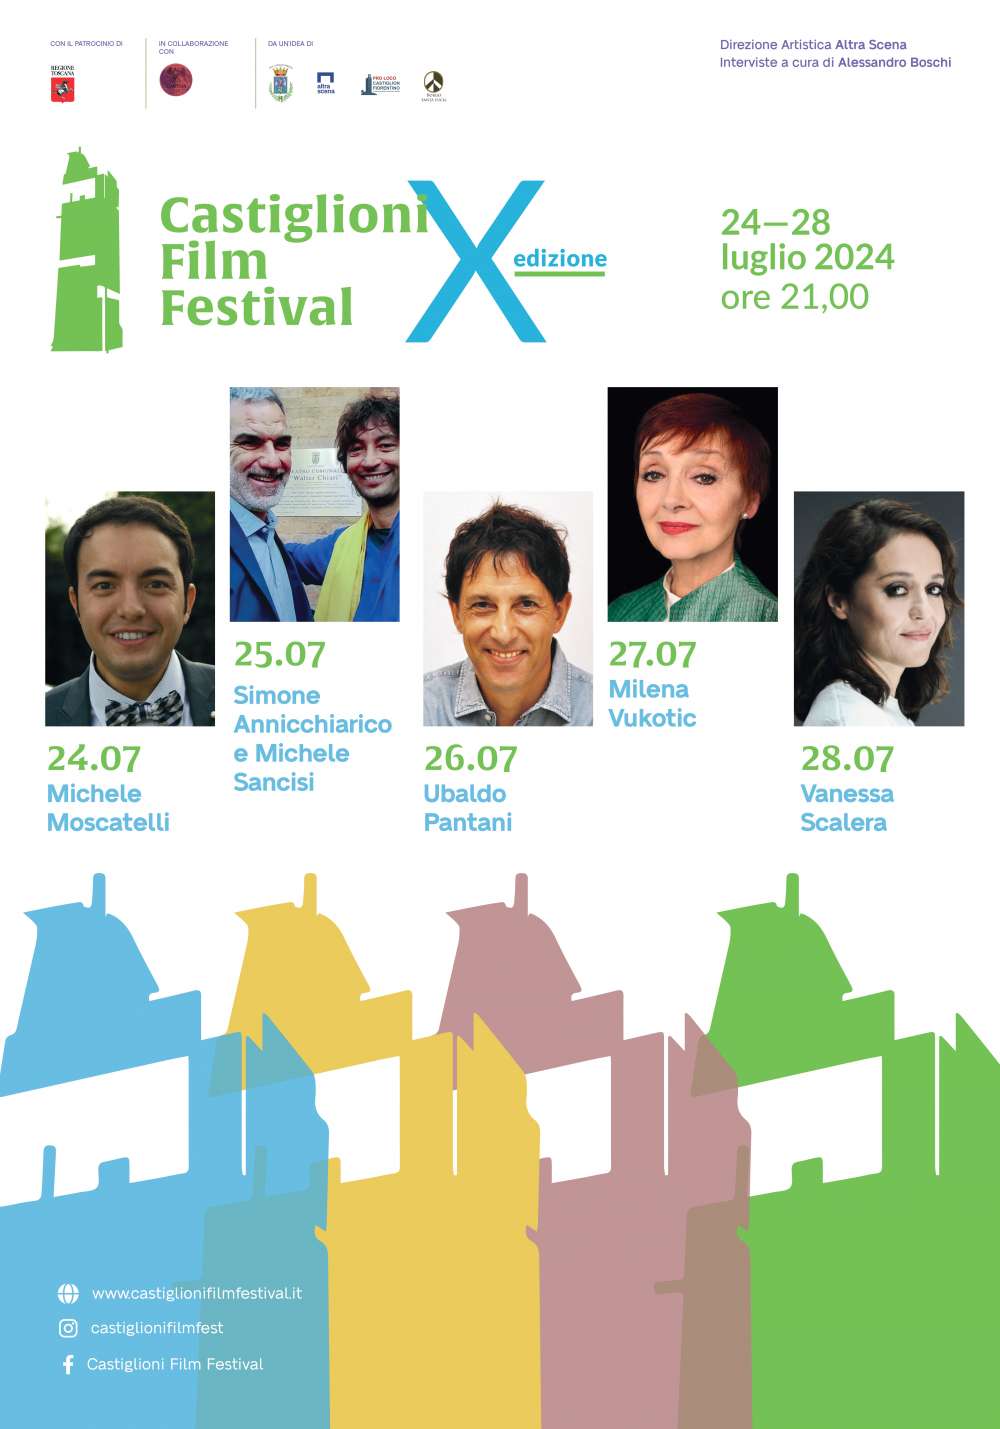 Giunge alla X edizione il Castiglioni Film Festival